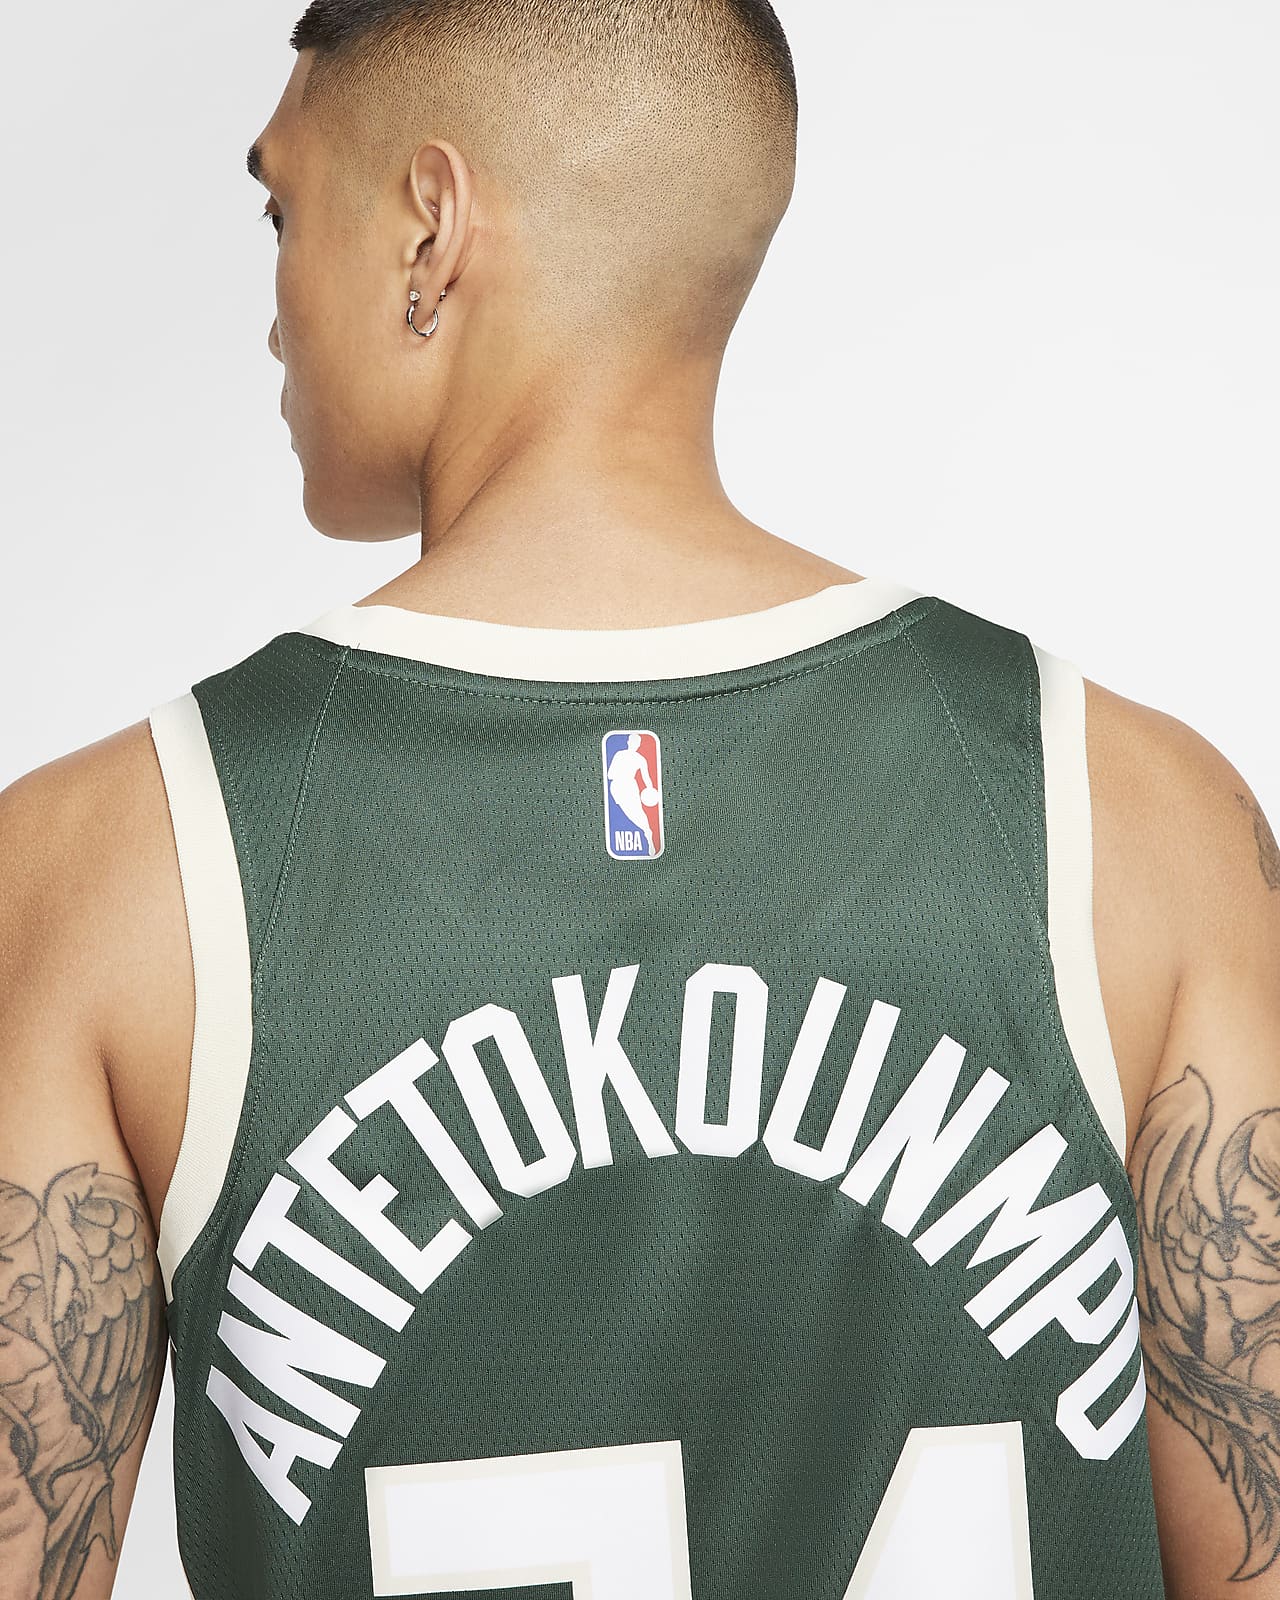 Giannis Antetokounmpo Bucks Icon Edition 2020 Nike NBA Authentic Jersey